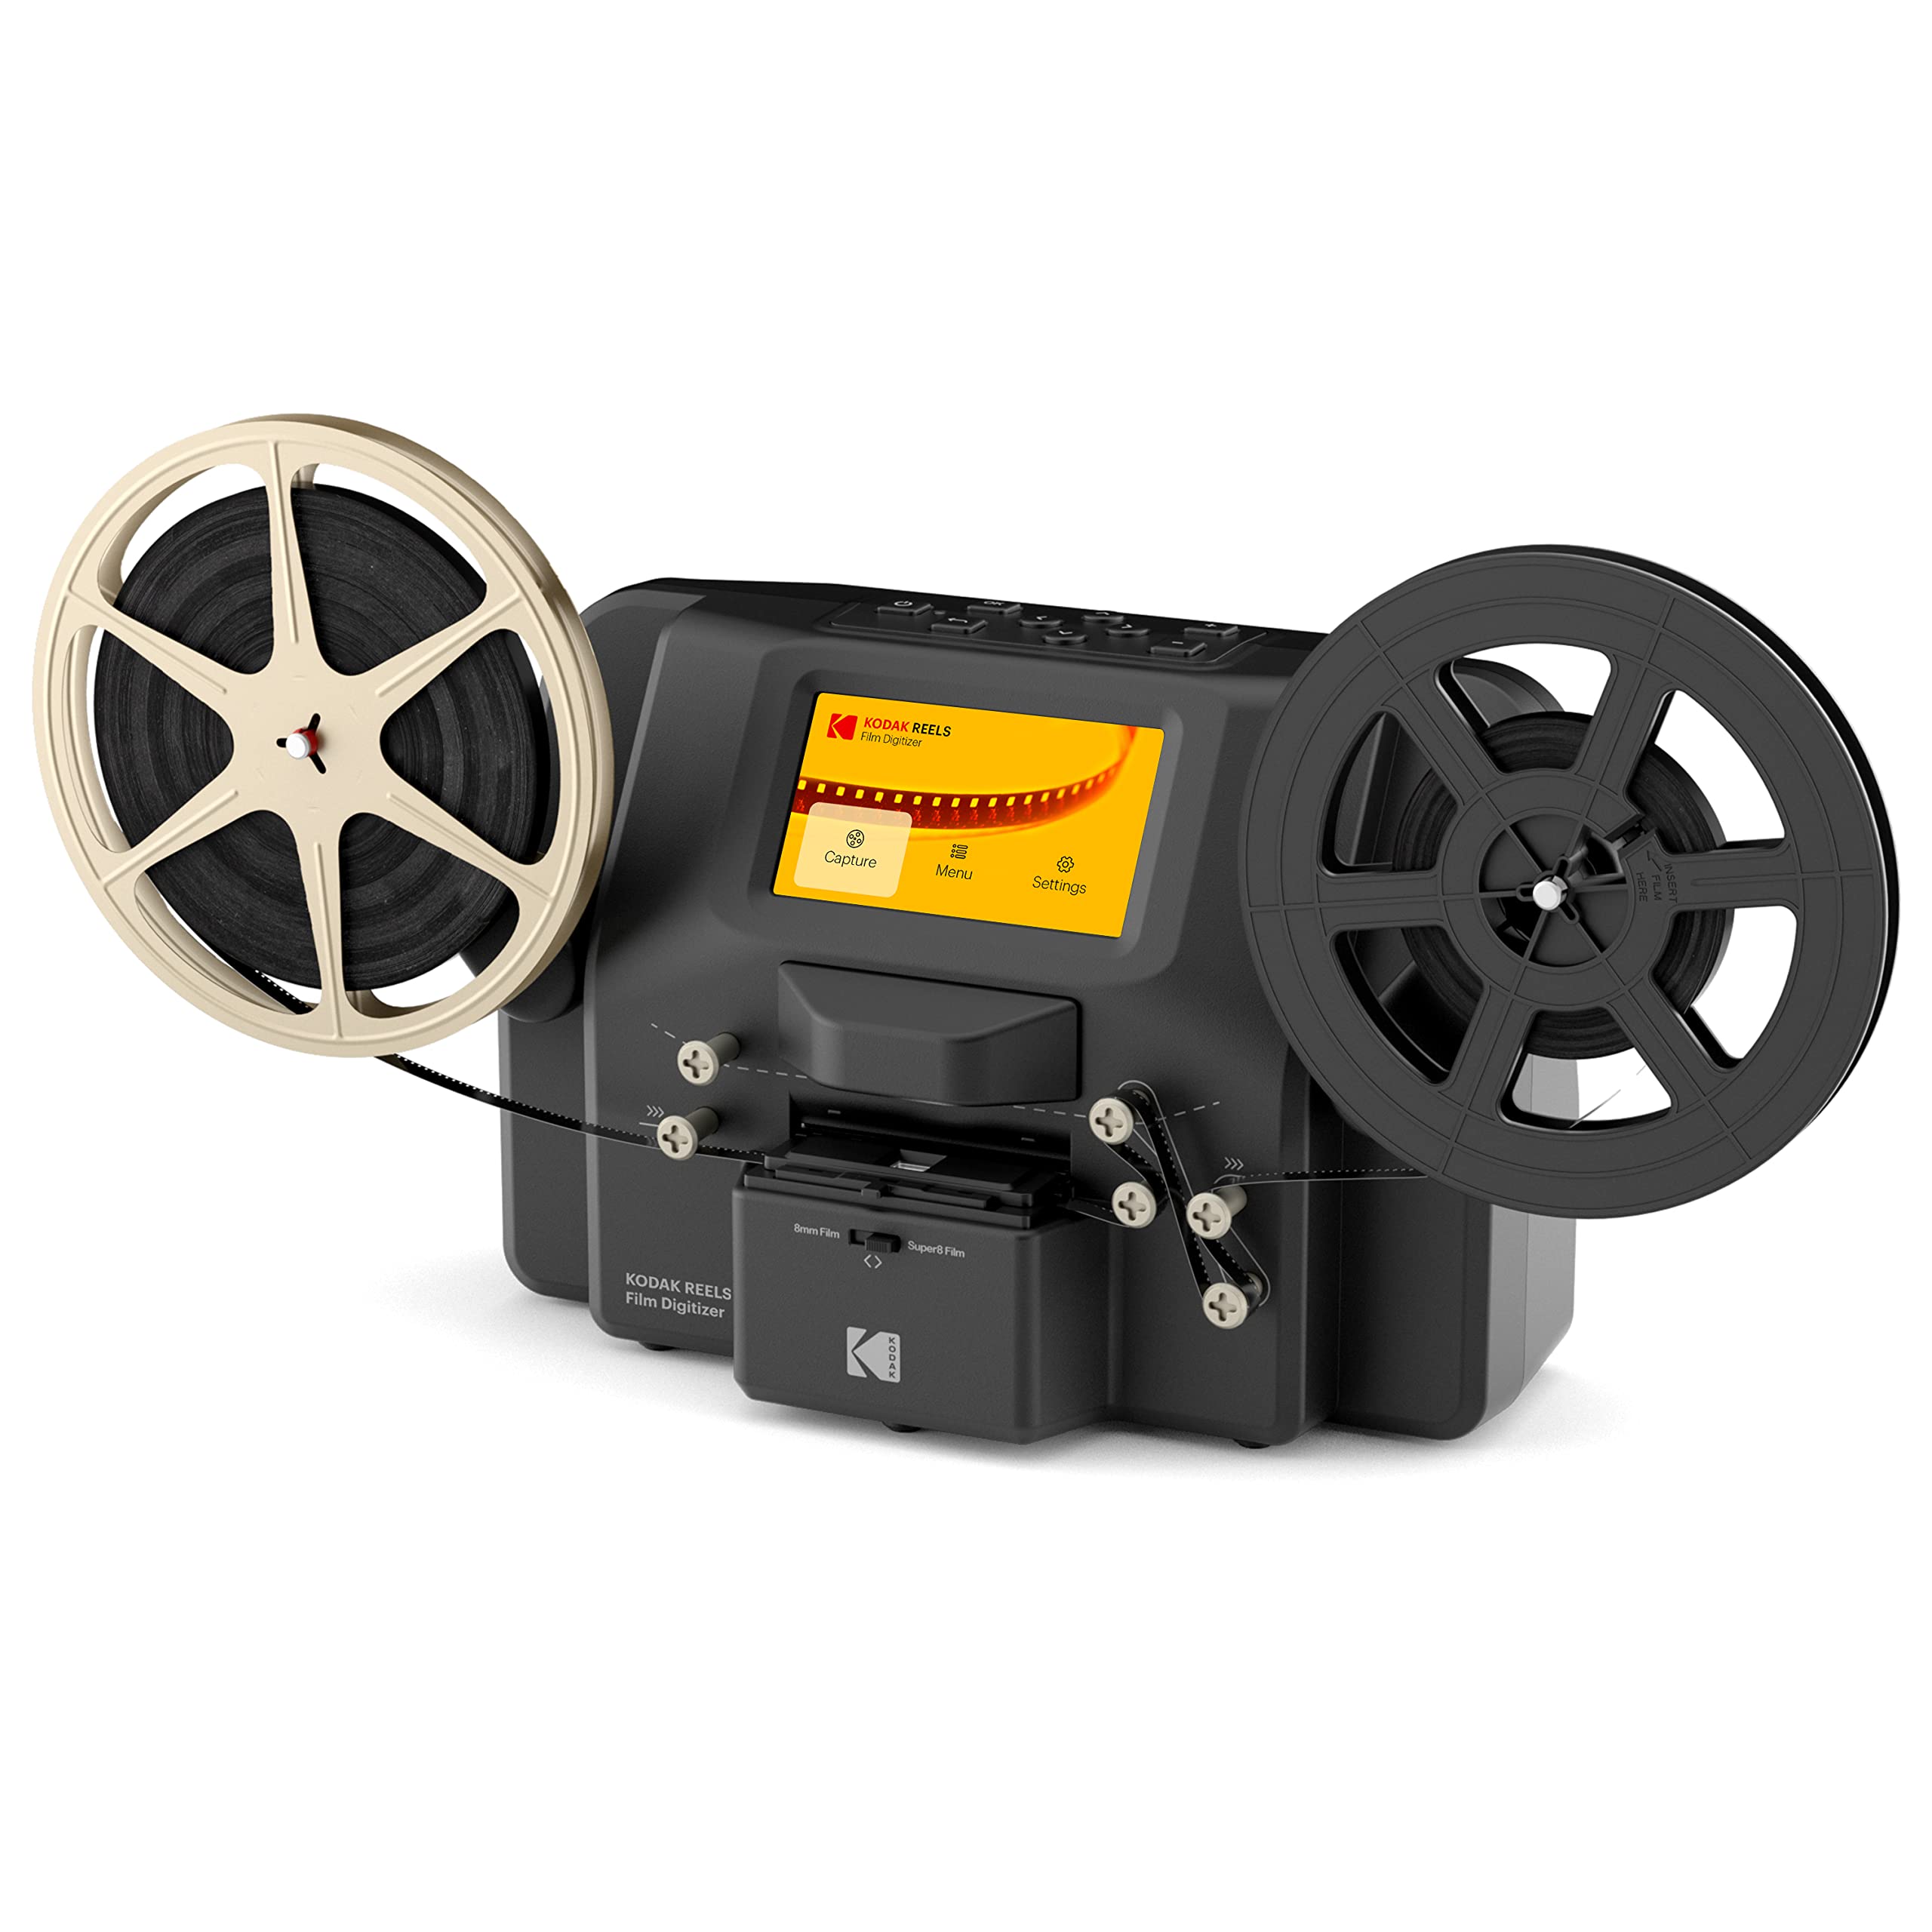  Kodak REELS 8mm & スーパー 8 フィルムデジタイザーコンバーター Big 5 スクリーン付き、スキャナーはフィルムをフレーム単位でデジタル MP4 ファイルに...